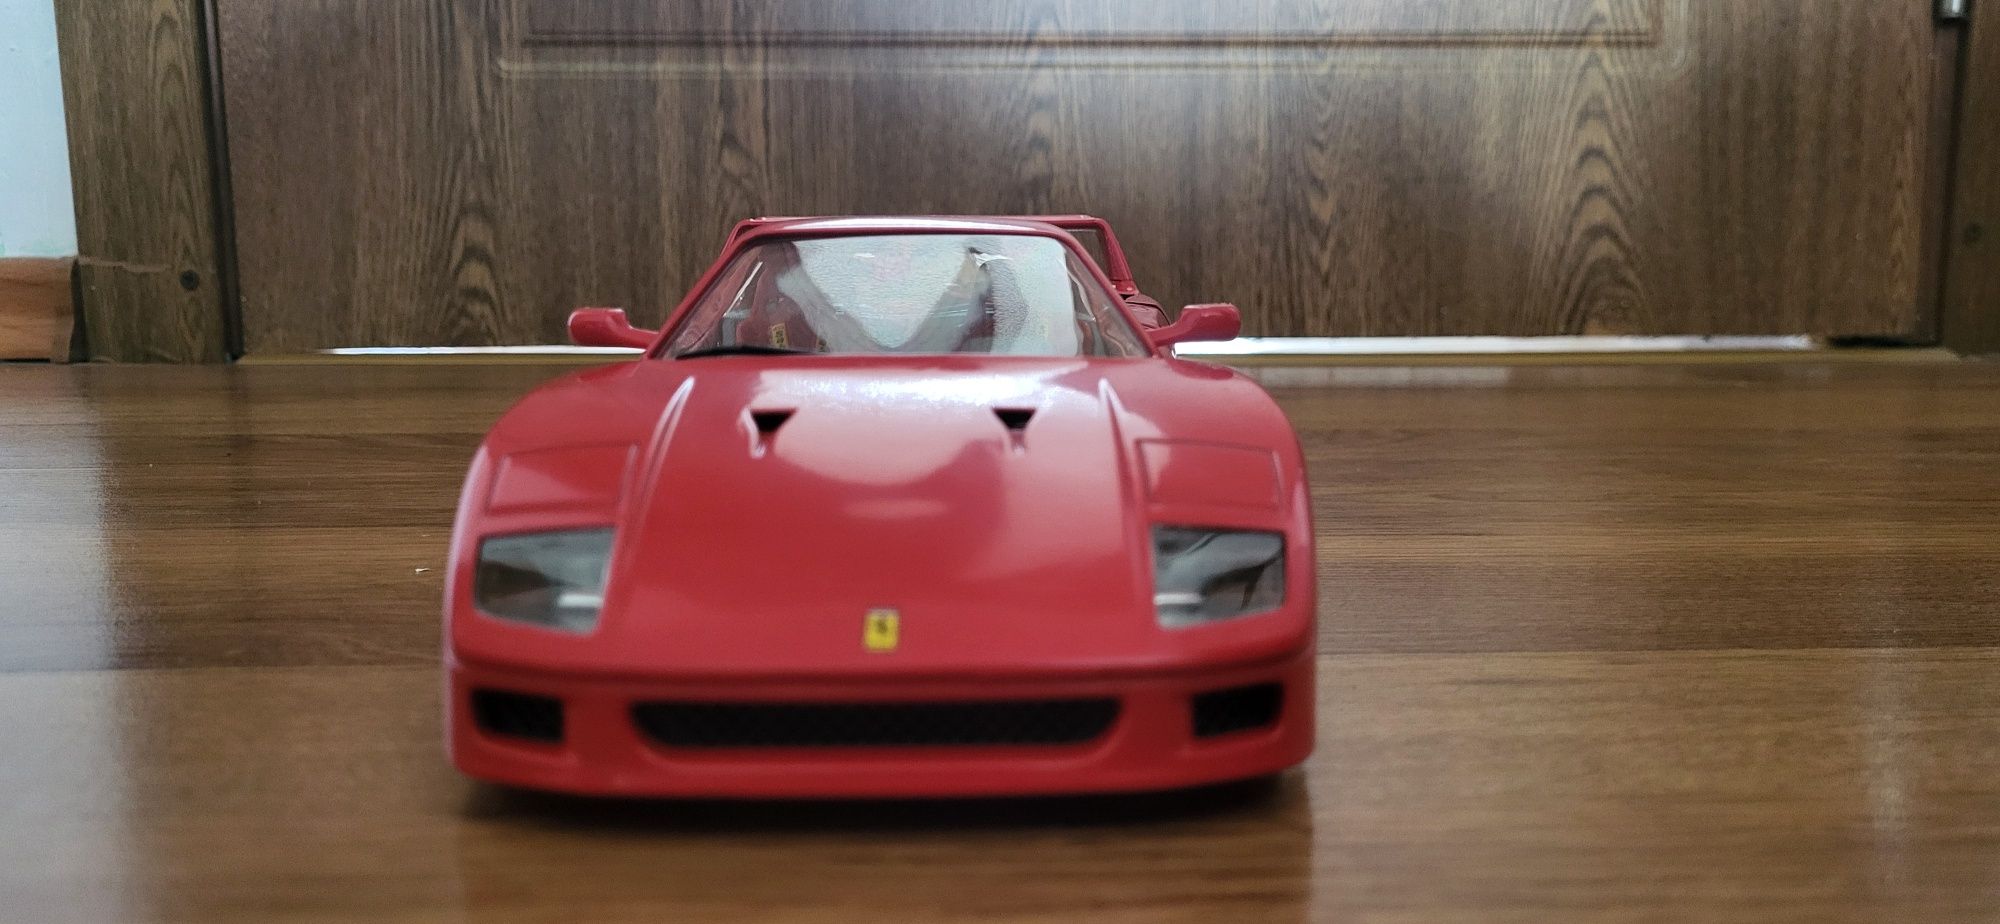 Vând Ferrari F40